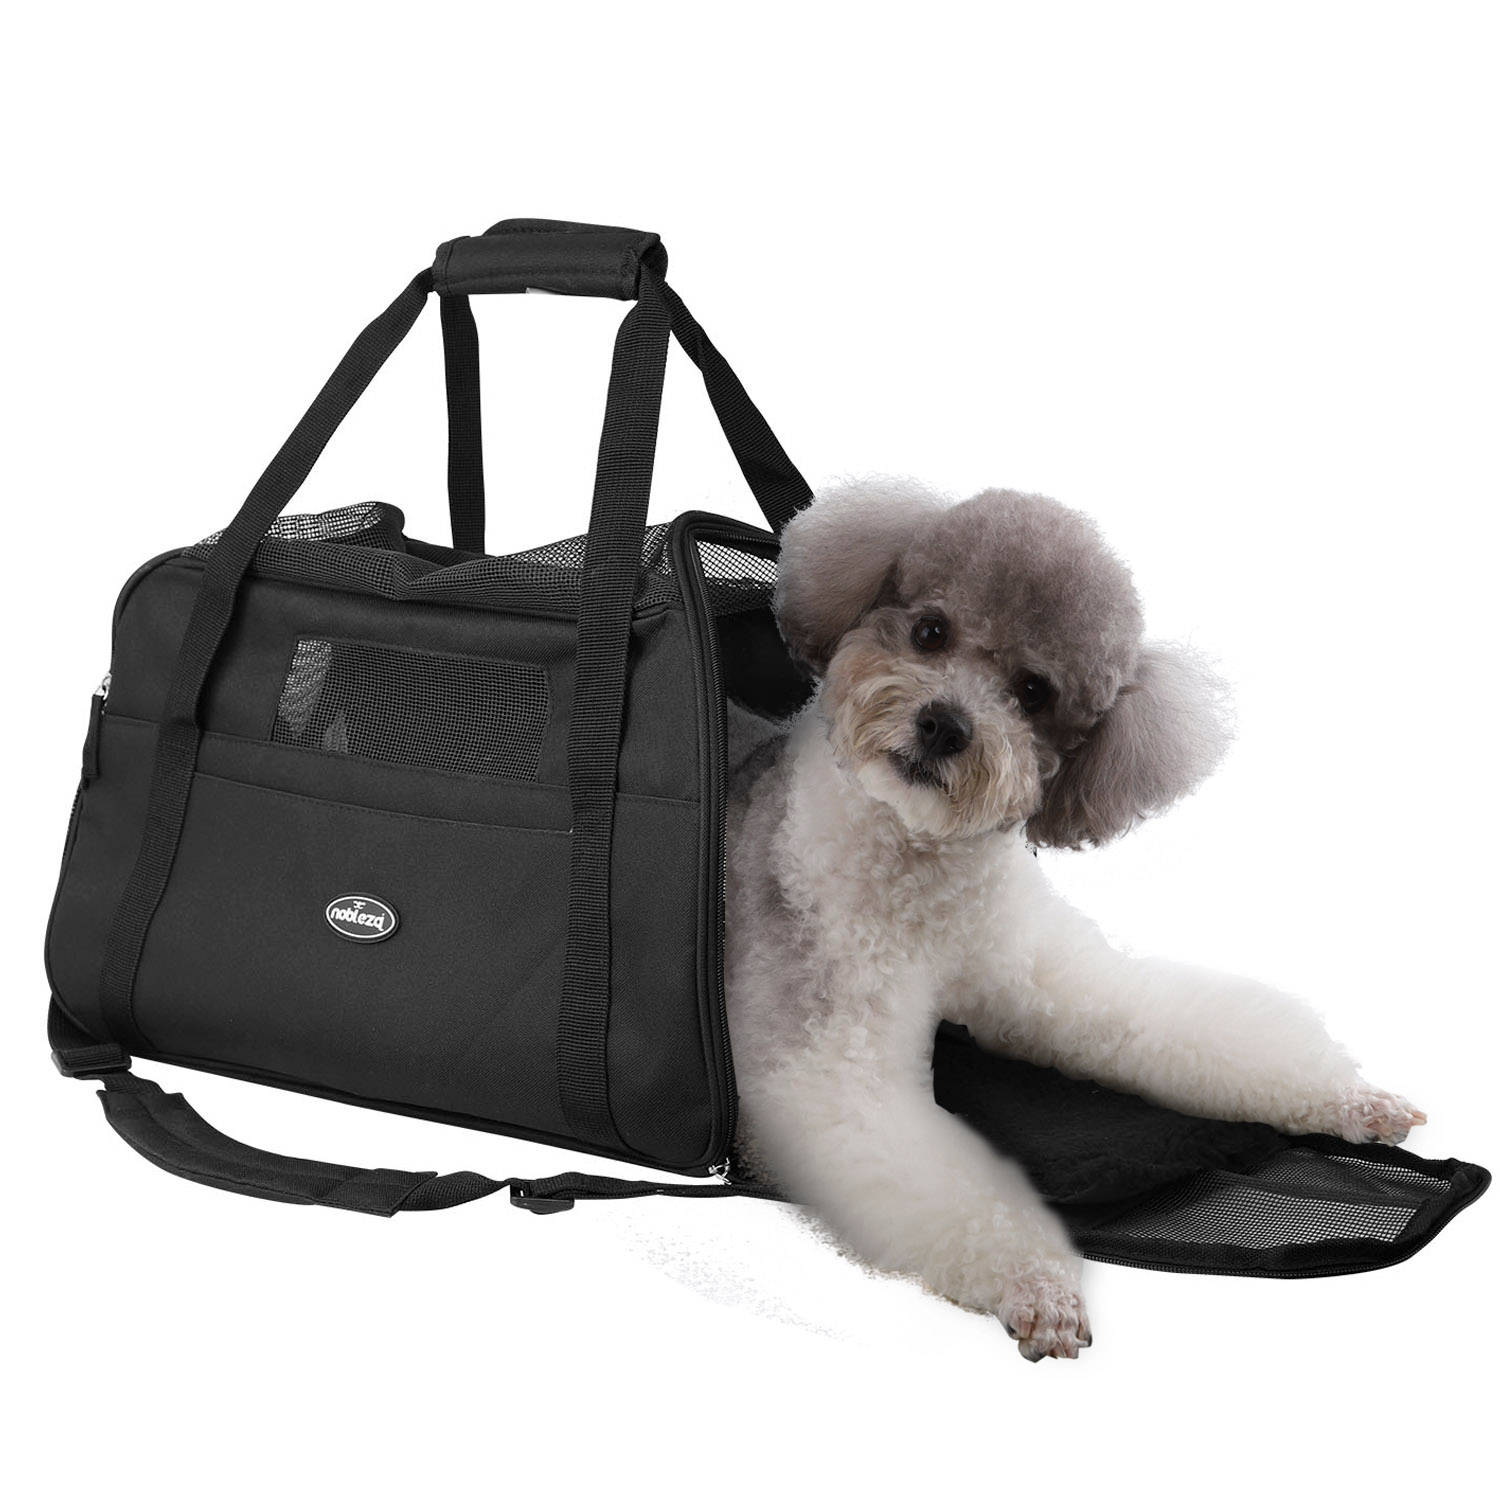 Nobleza Reistas voor Huisdieren 41JPH - Transport tas - Dieren draagtas - L43 x B23 x H29 cm - M - Zwart